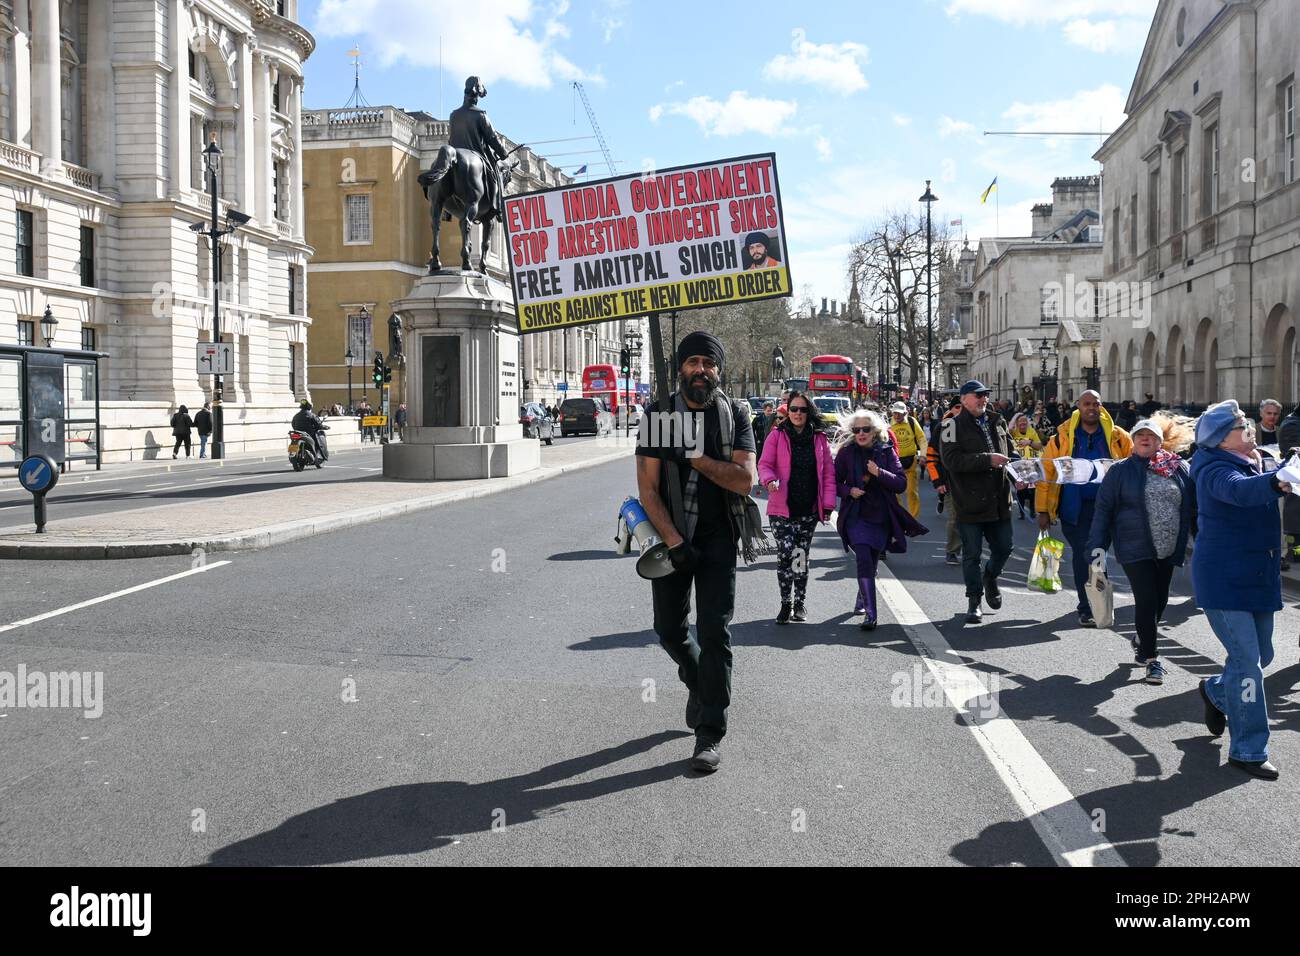 Protesta il malvagio governo indiano smettere di arrestare innocenti Sikhs, Londra, UK Credit: Vedere li/Picture Capital/Alamy Live News Foto Stock